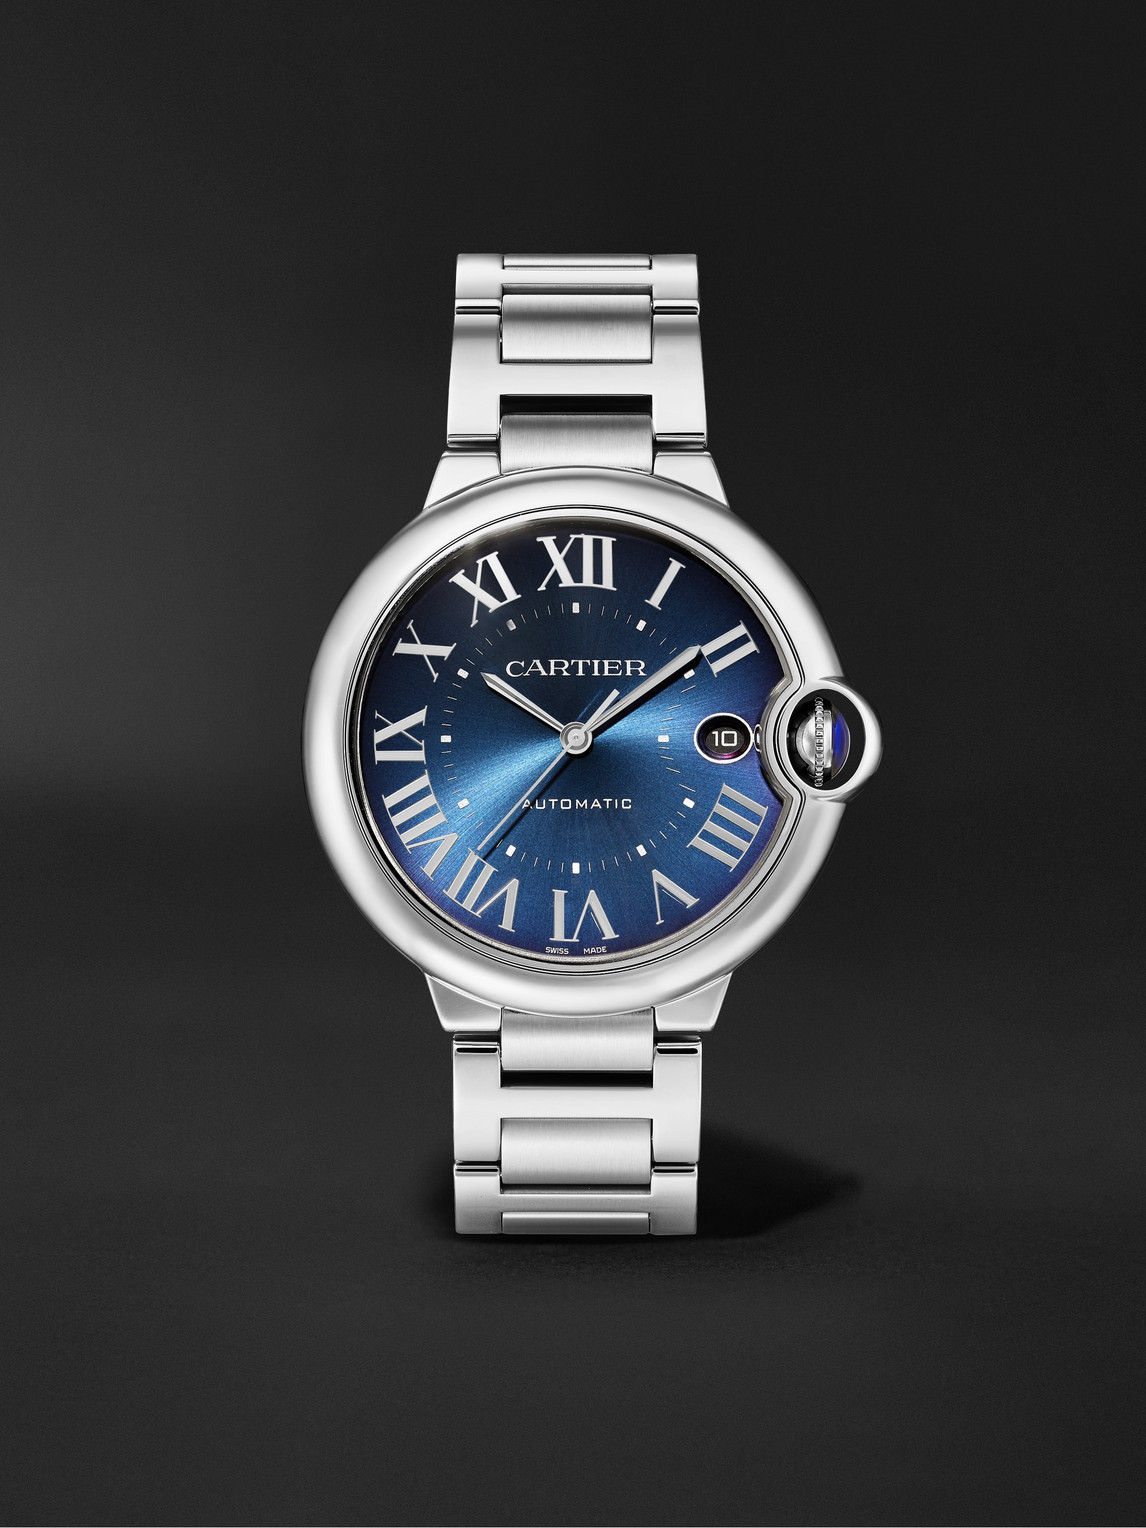 Ballon Bleu de Cartier Automatic 40mm Stainless Steel Watch, Ref. No. WSBB0061